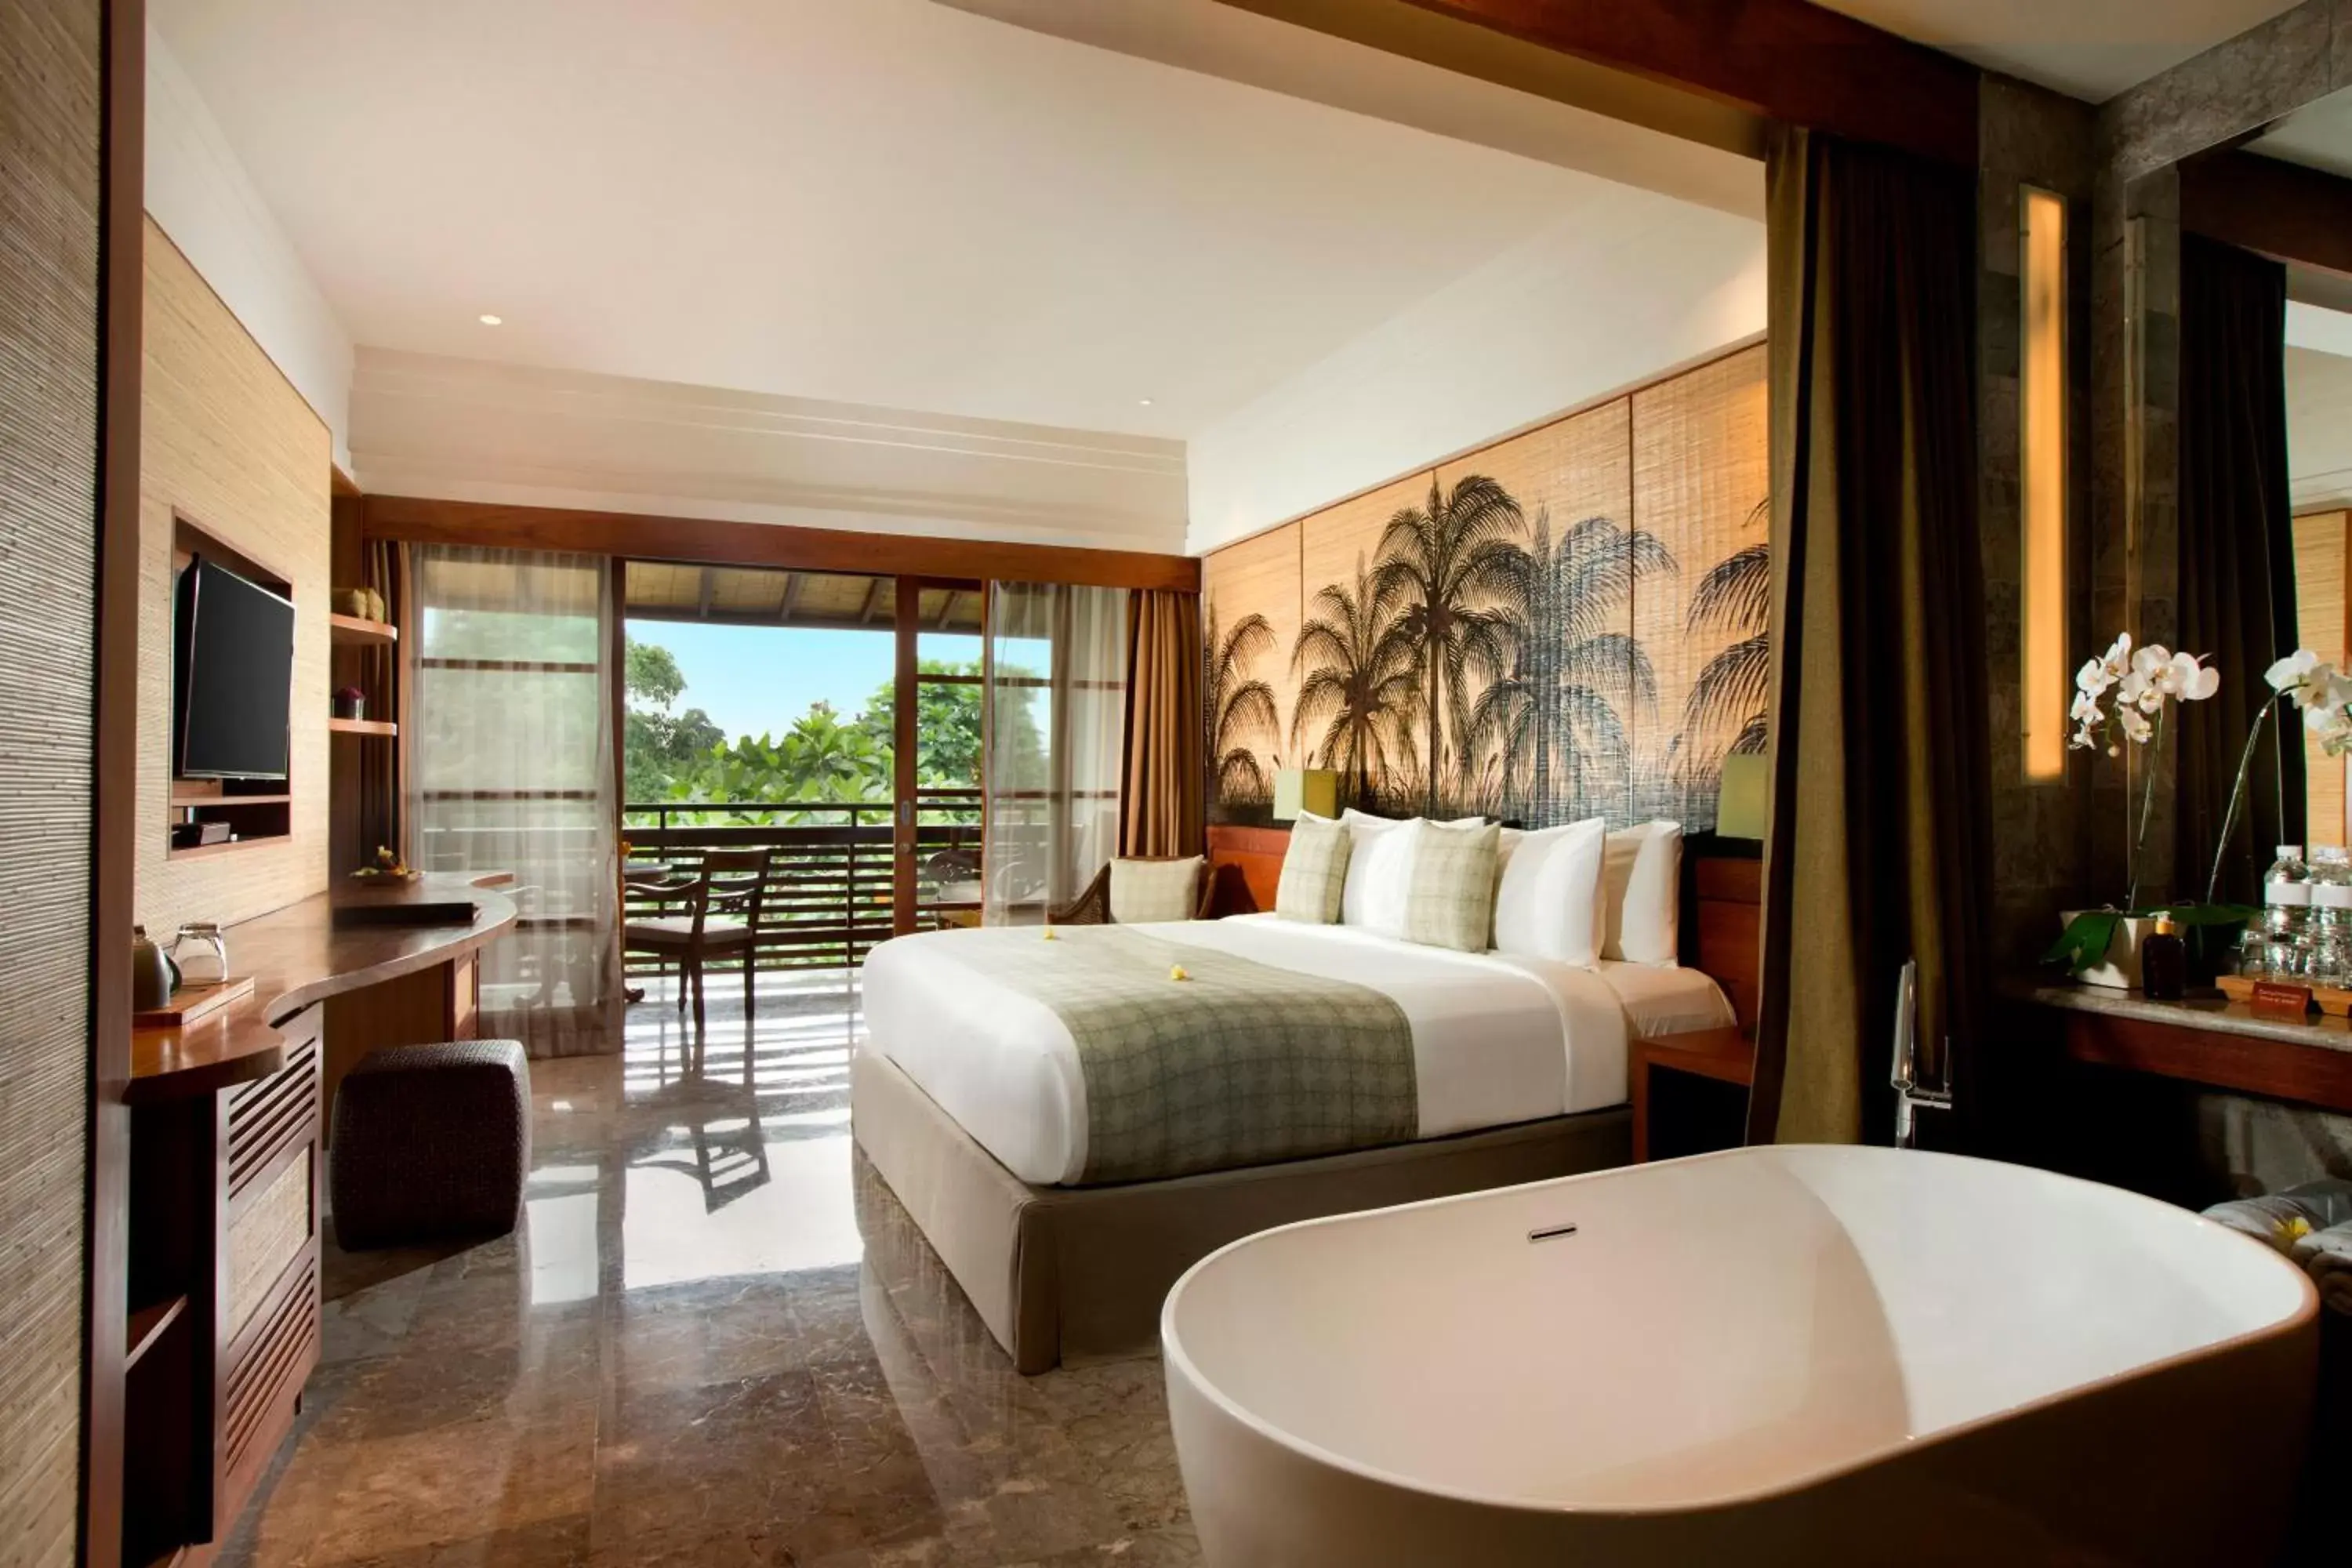 Bedroom in Adiwana Resort Jembawan